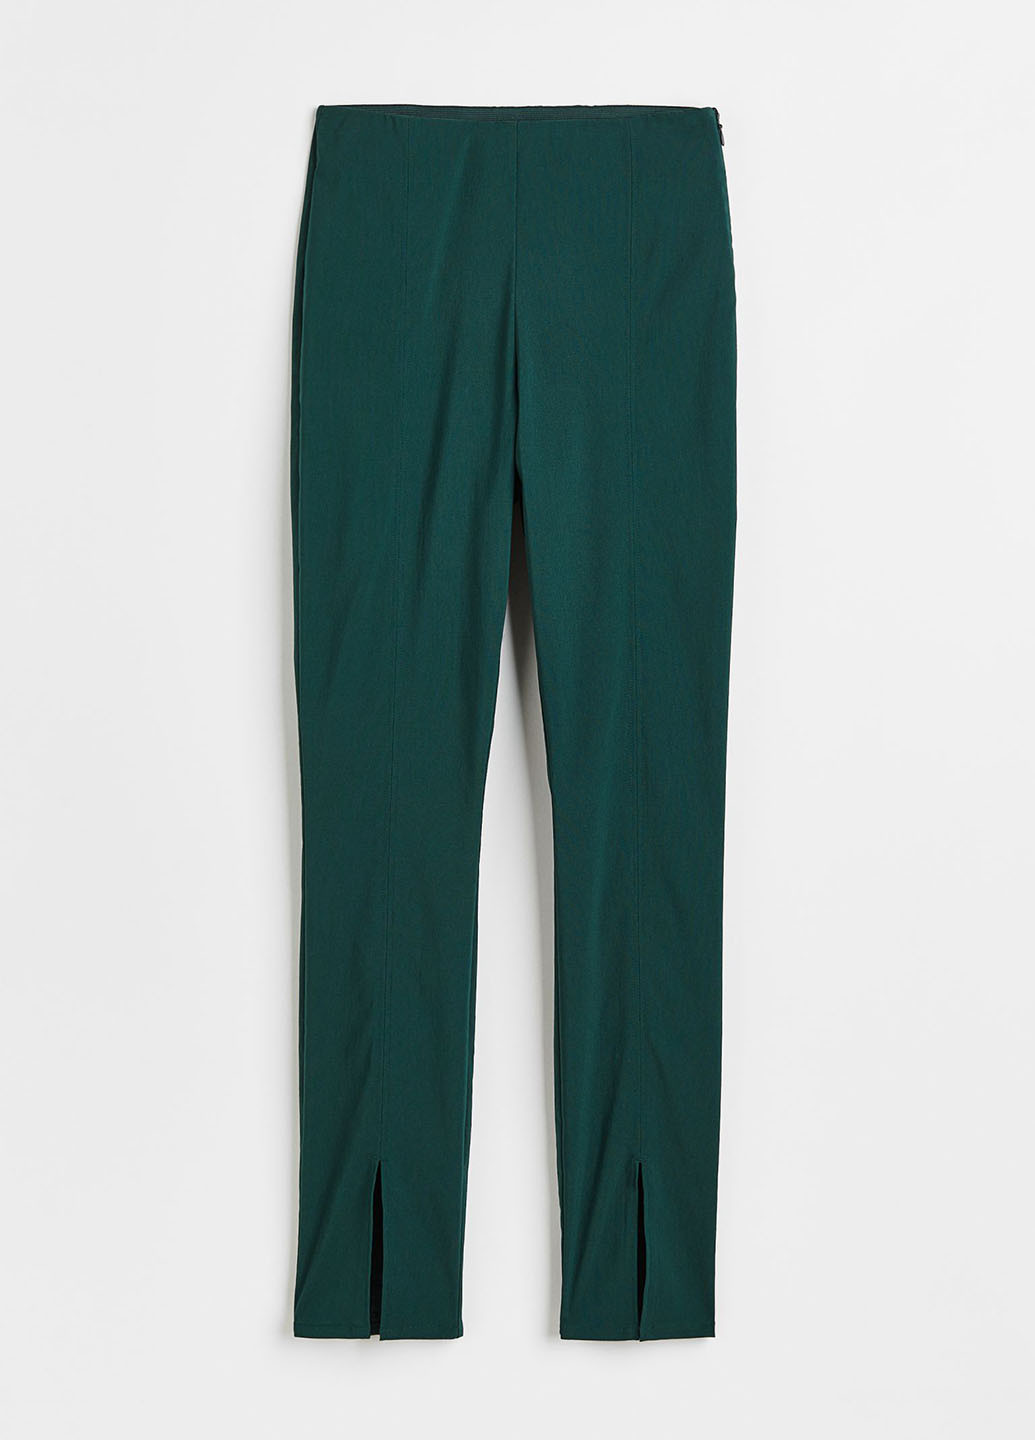 Темно-зеленые кэжуал демисезонные зауженные брюки H&M